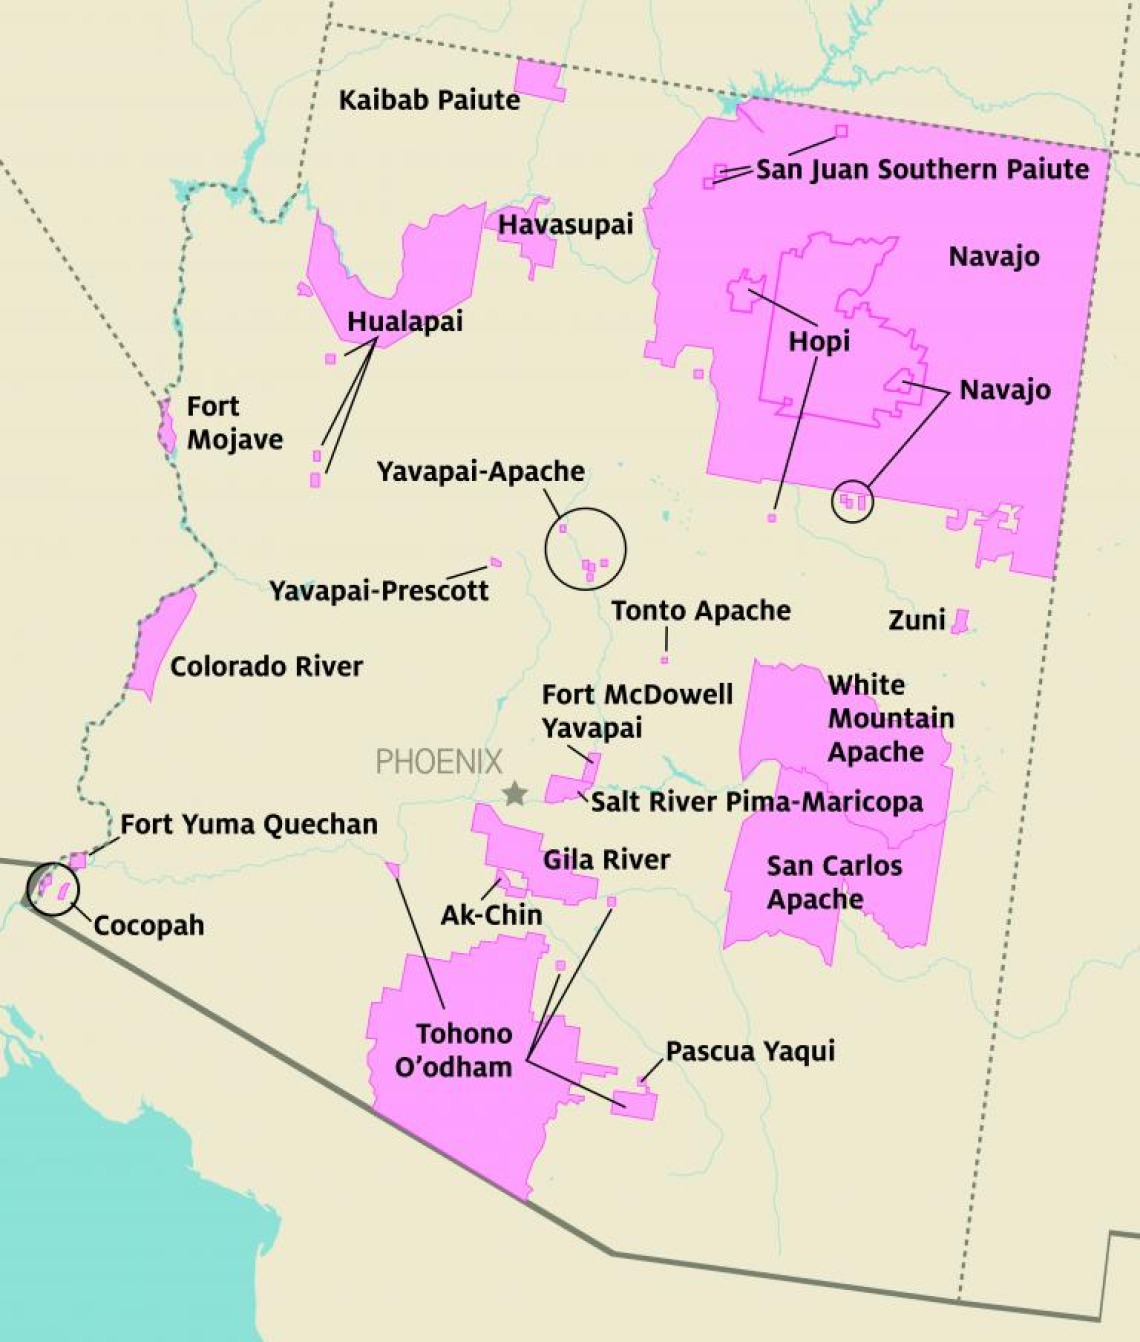 Tribal areas in Arizona